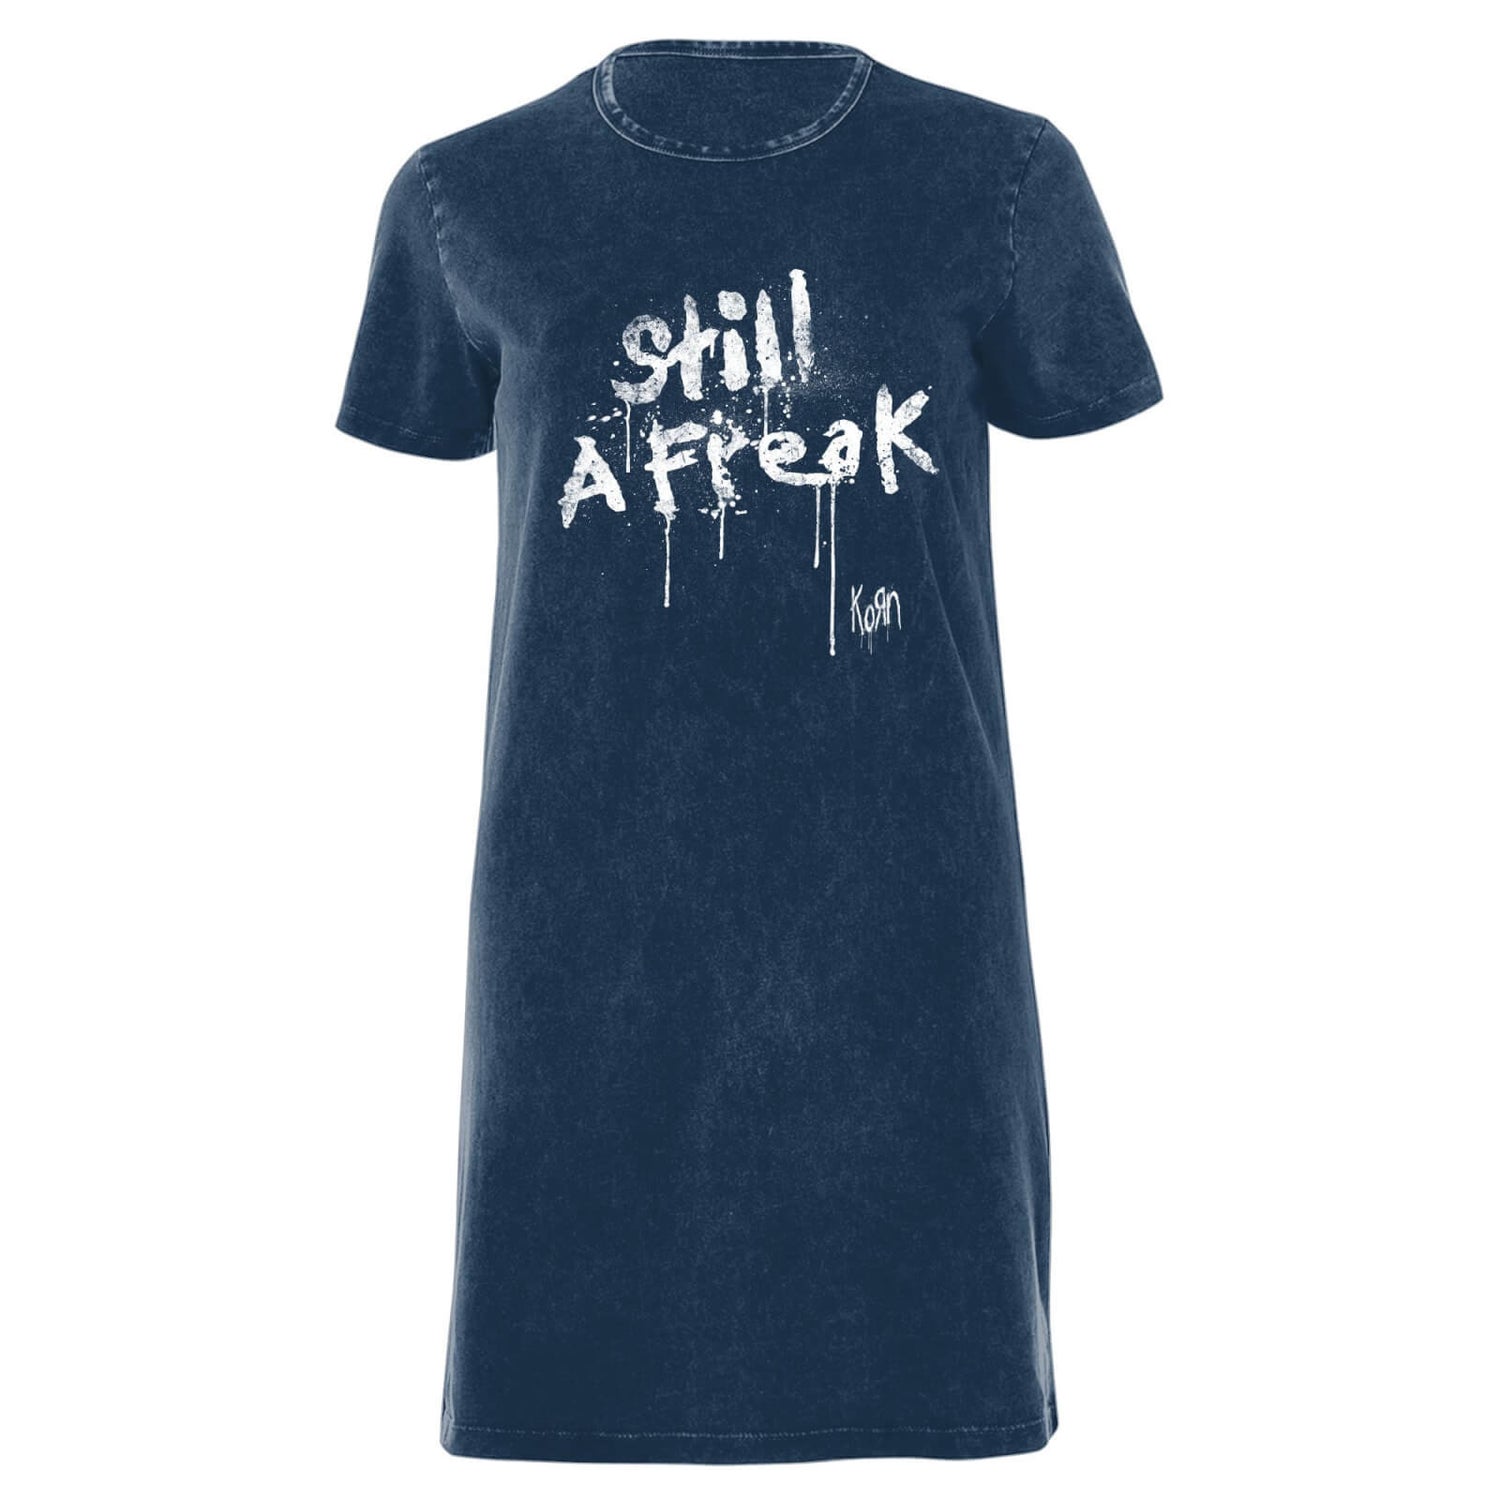 Korn Still A Freak Women's T-Shirt Dress - Navy Acid Wash - XS